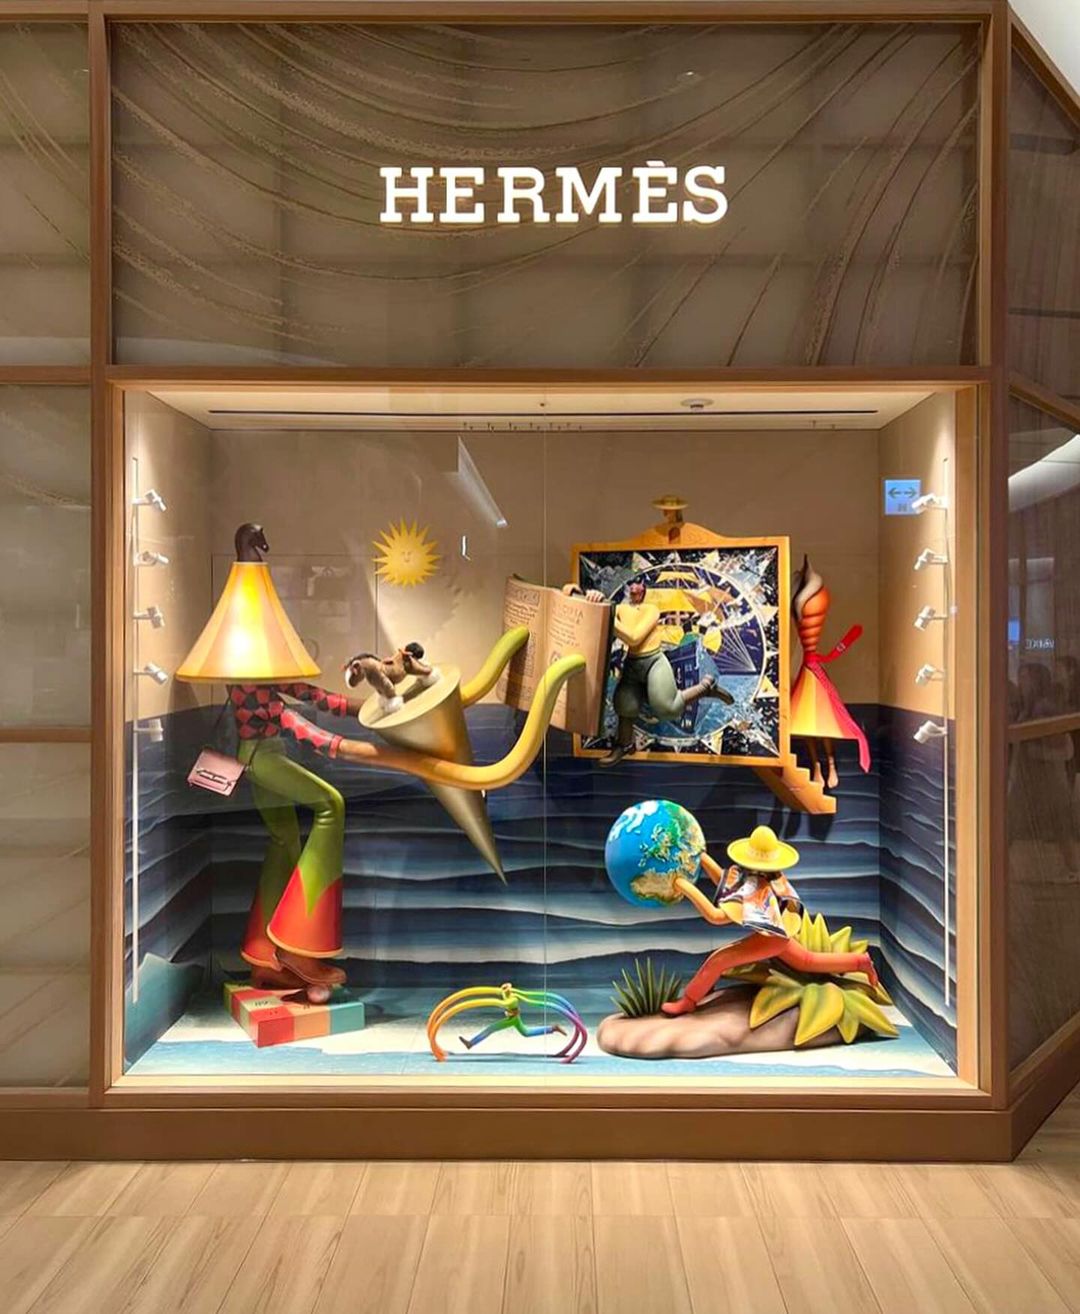 Український художник Володимир Манжос оформив вітрини бутика Hermes